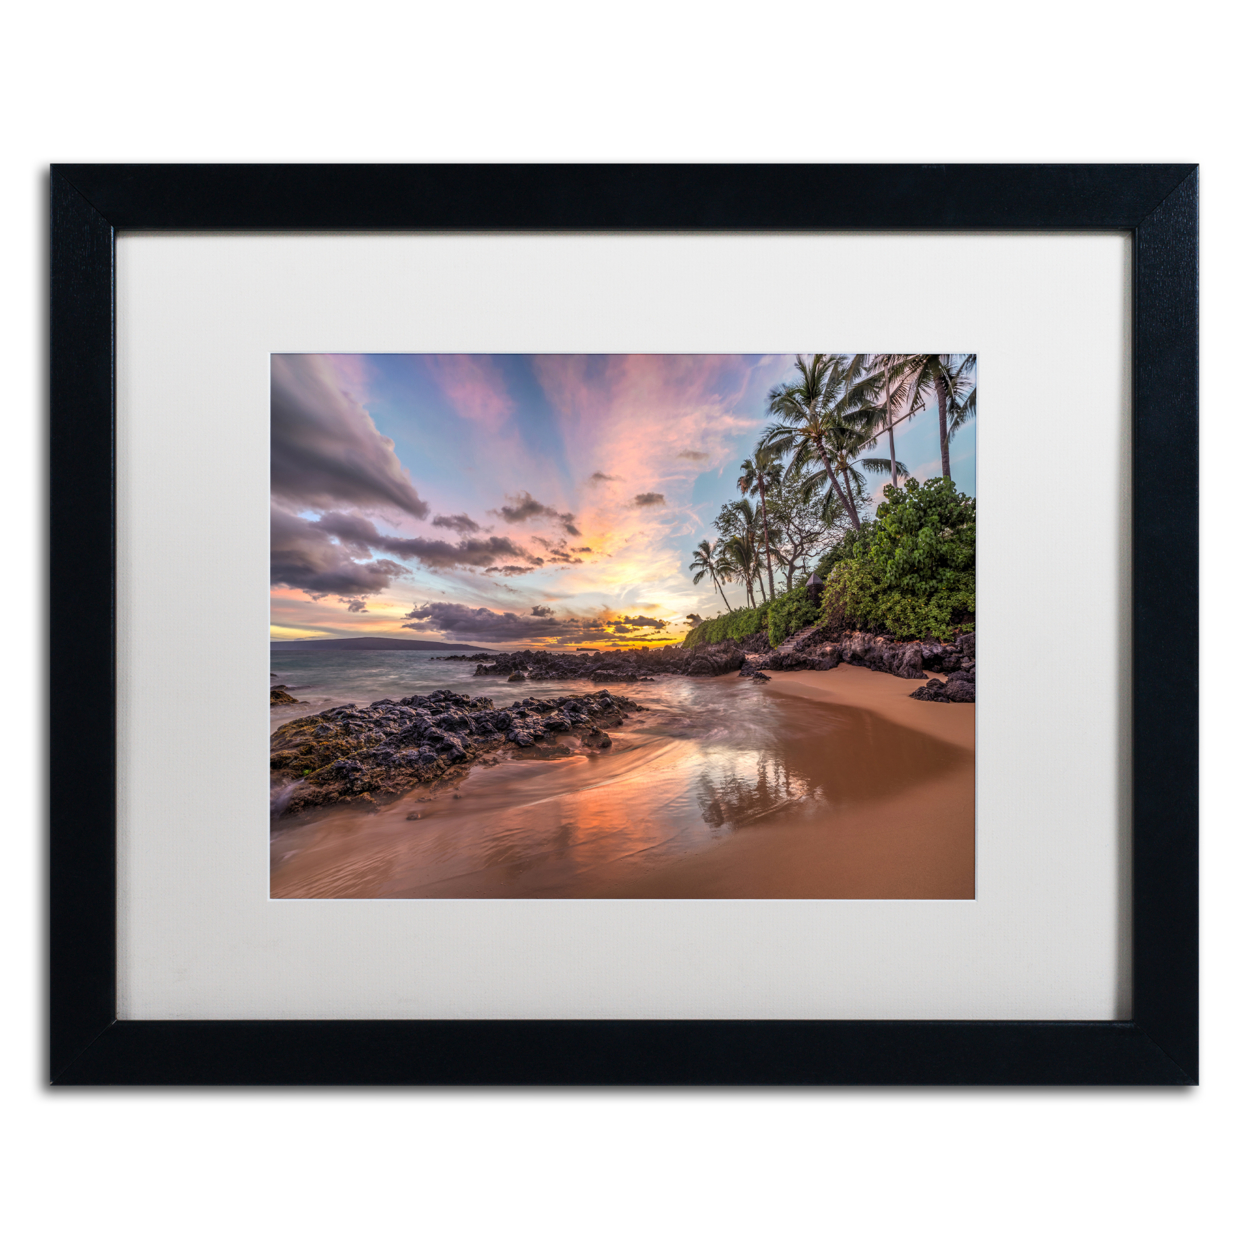 Pierre Leclerc 'Hawaiian Sunset Wonder' Black Wooden Framed Art 18 X 22 Inches